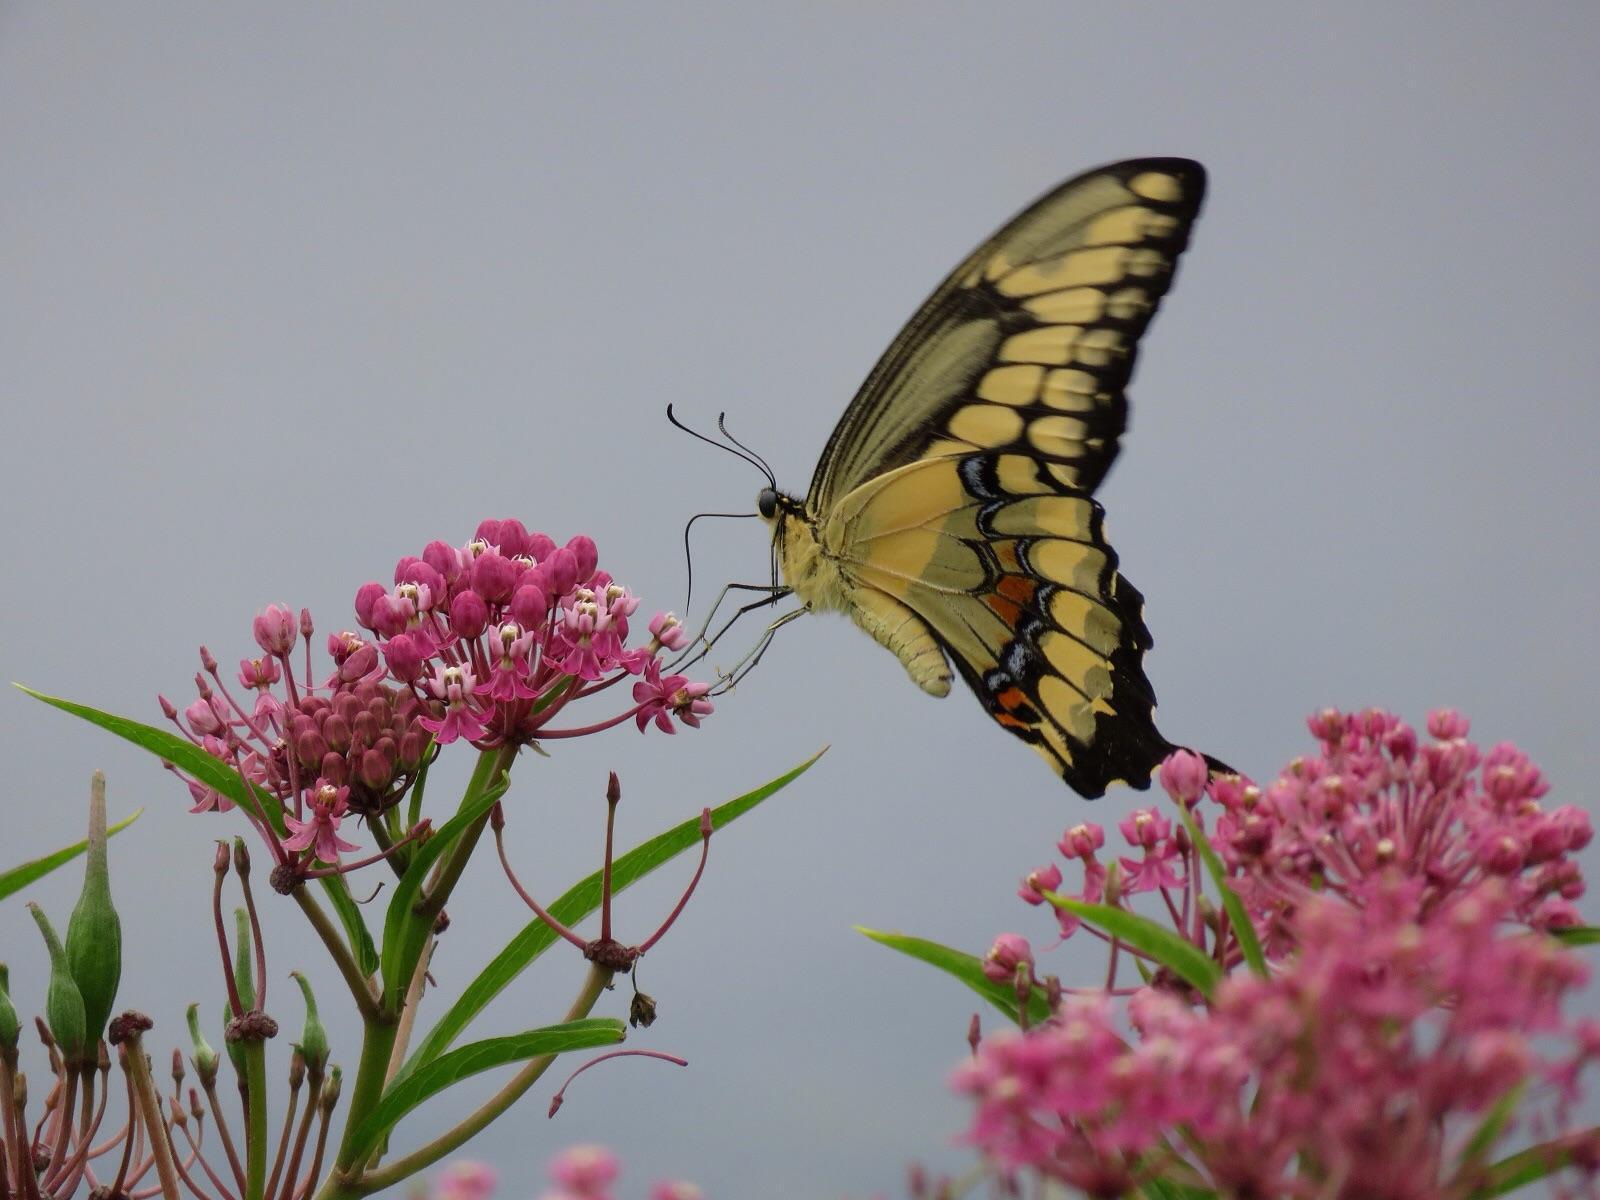 Giant Swallowtail Photo by Ryan Chrouser